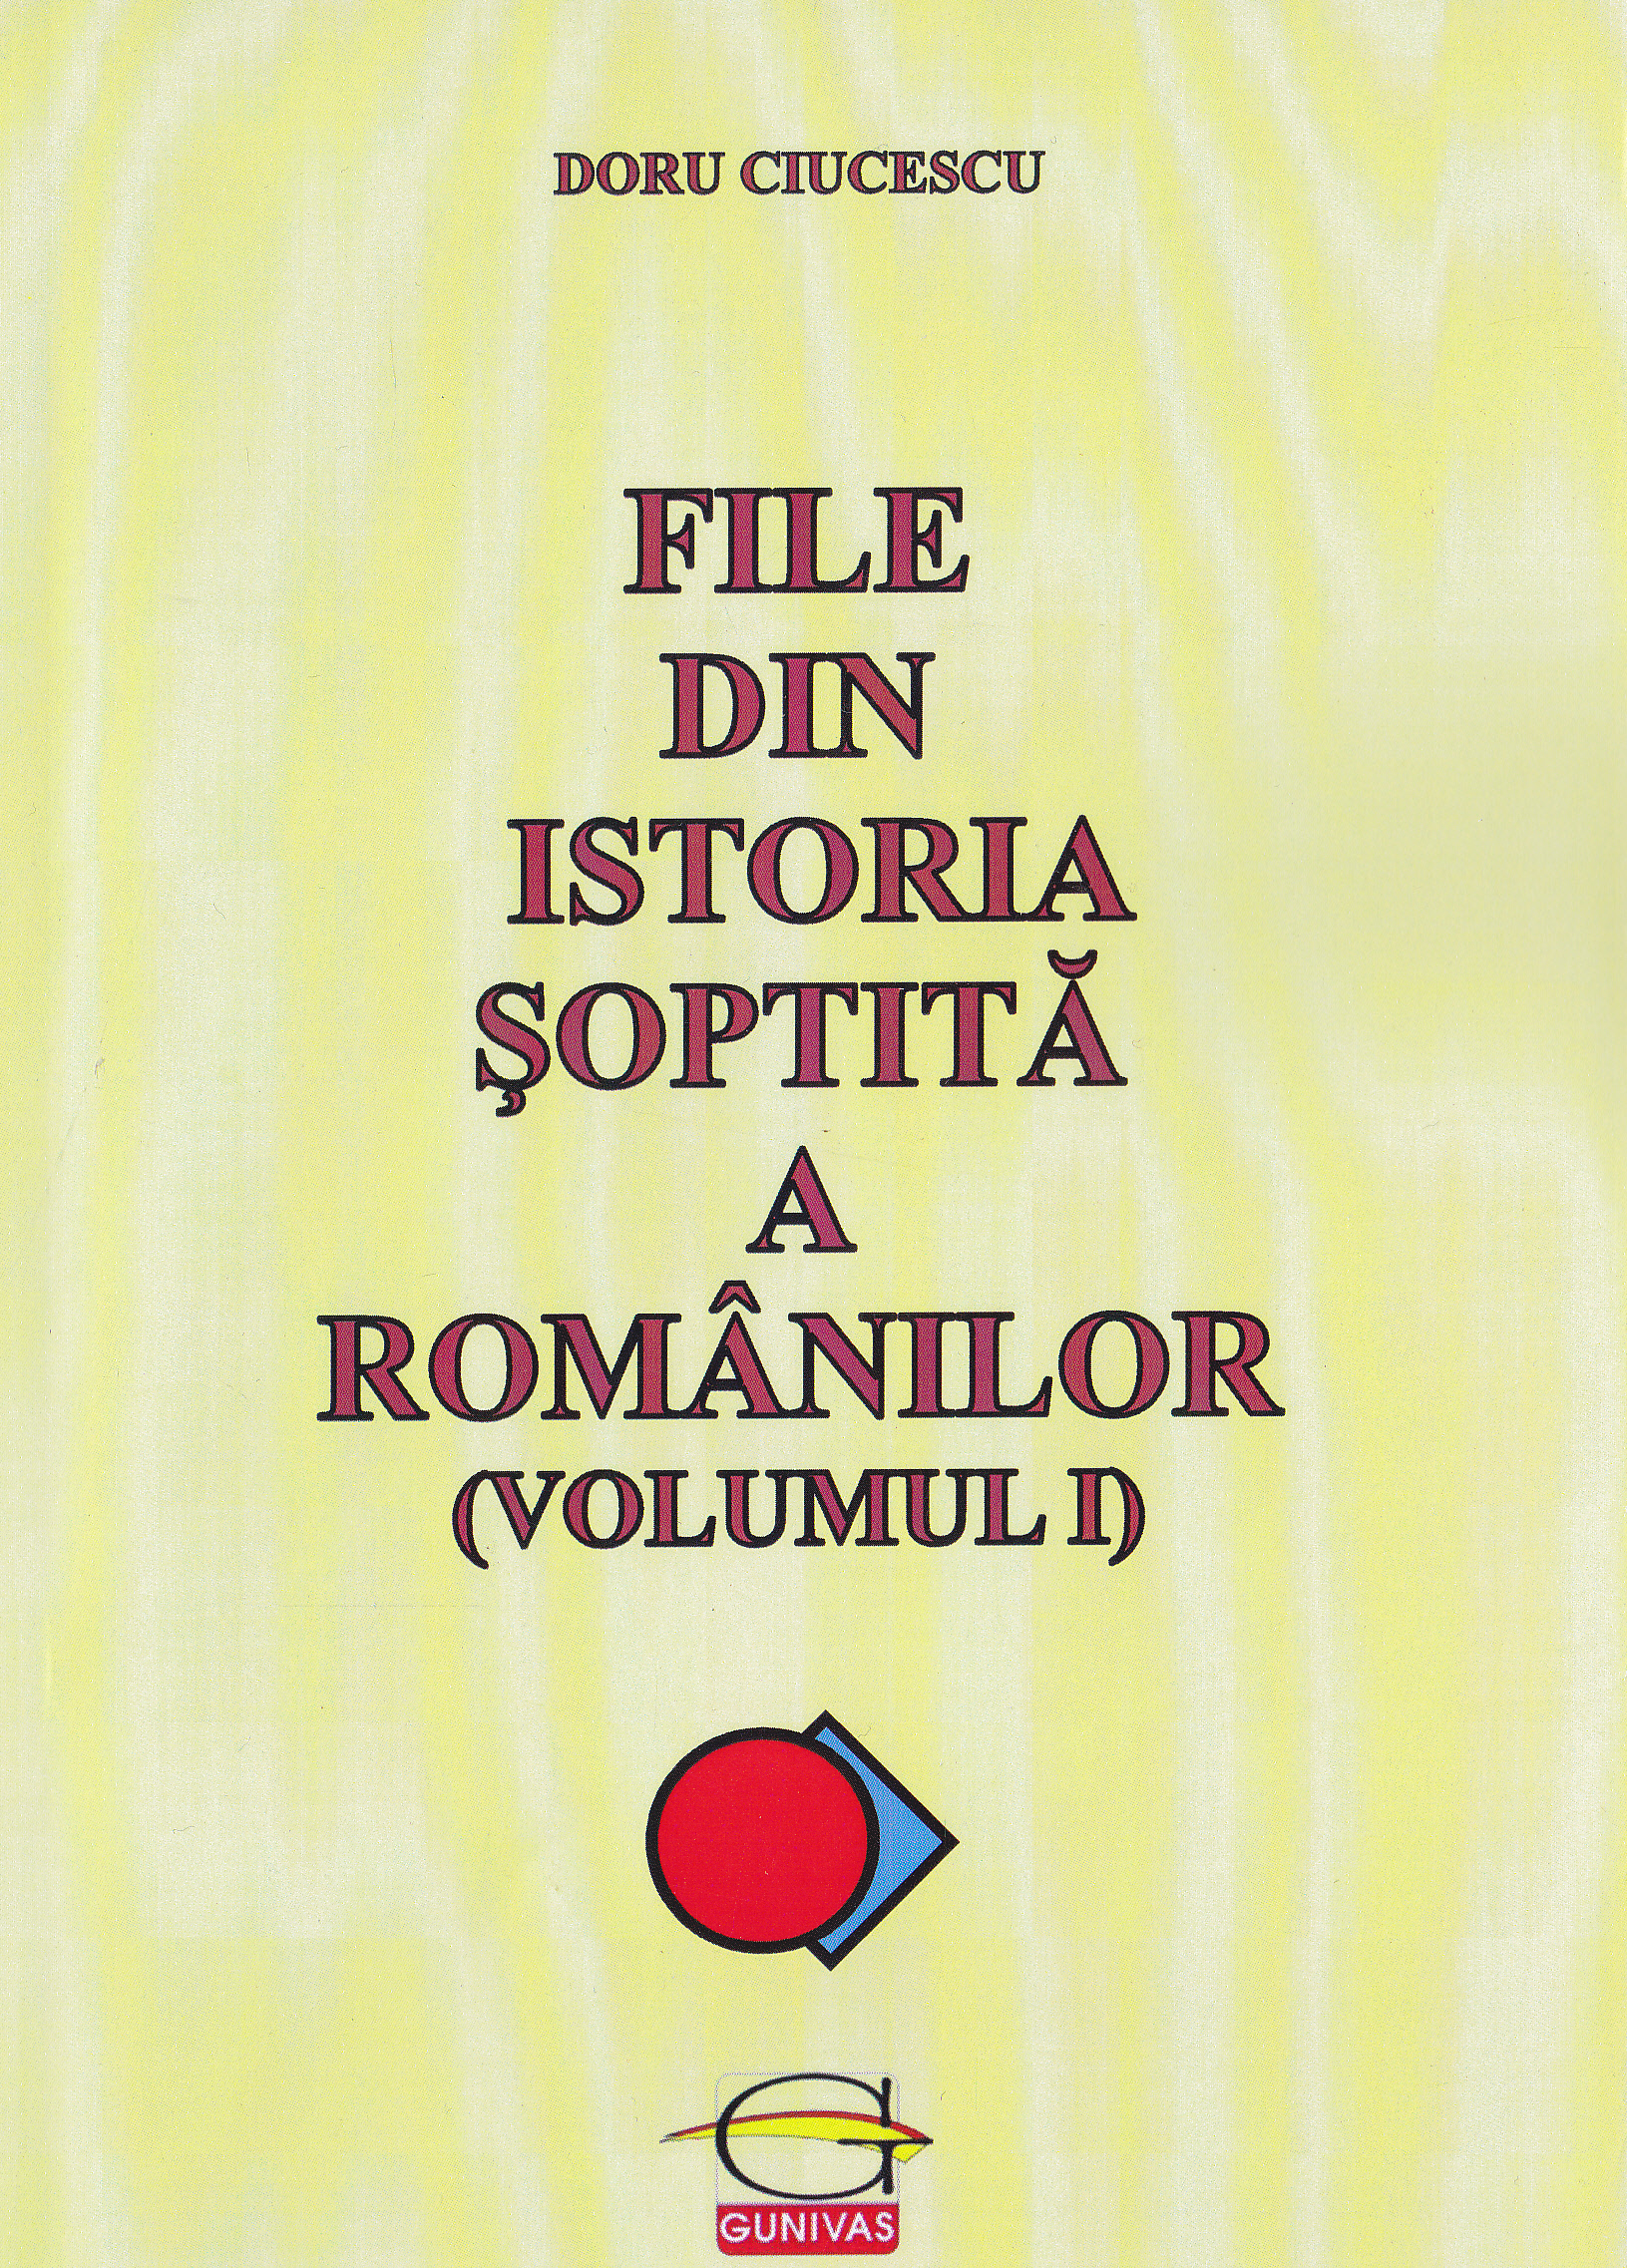 File din istoria soptita a romanilor vol.1 - Doru Ciucescu